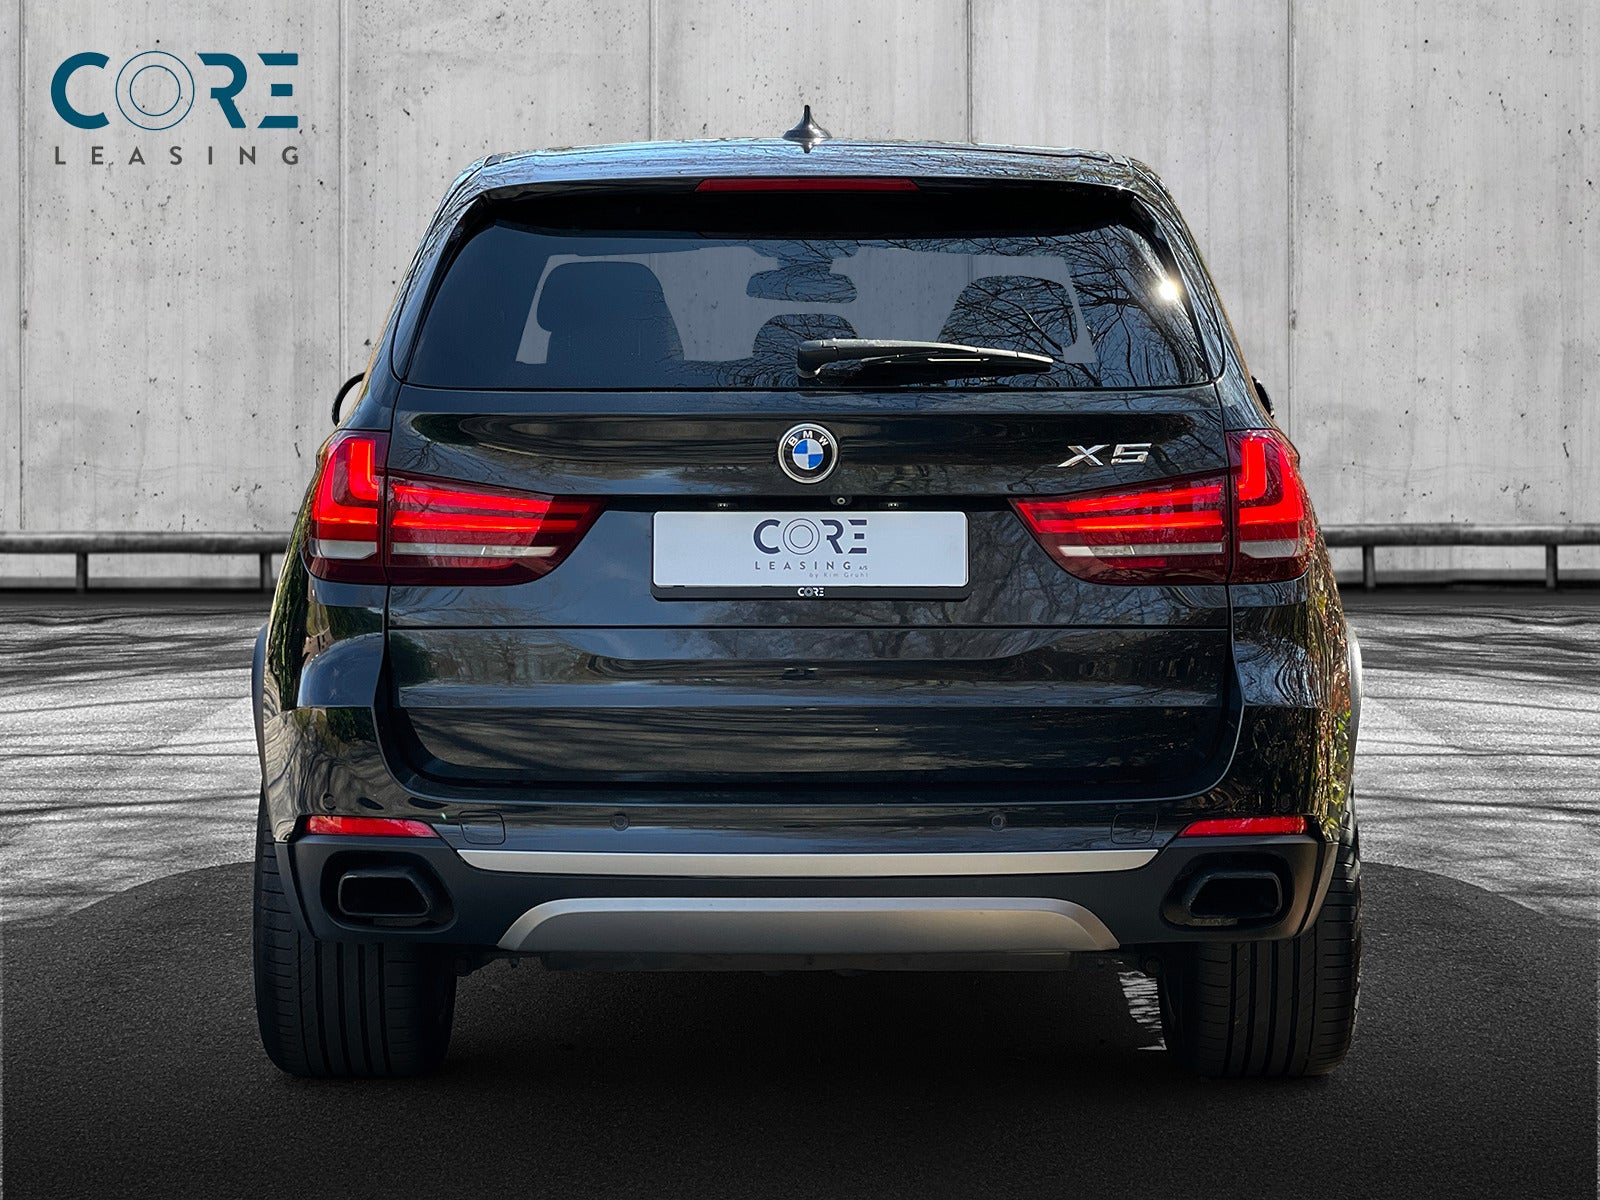 Sortmetal BMW X5 xDrive50i aut. fra 2015 parkeret foran en betonmur. CORE Leasing A/S er eksperter i BMW leasing.